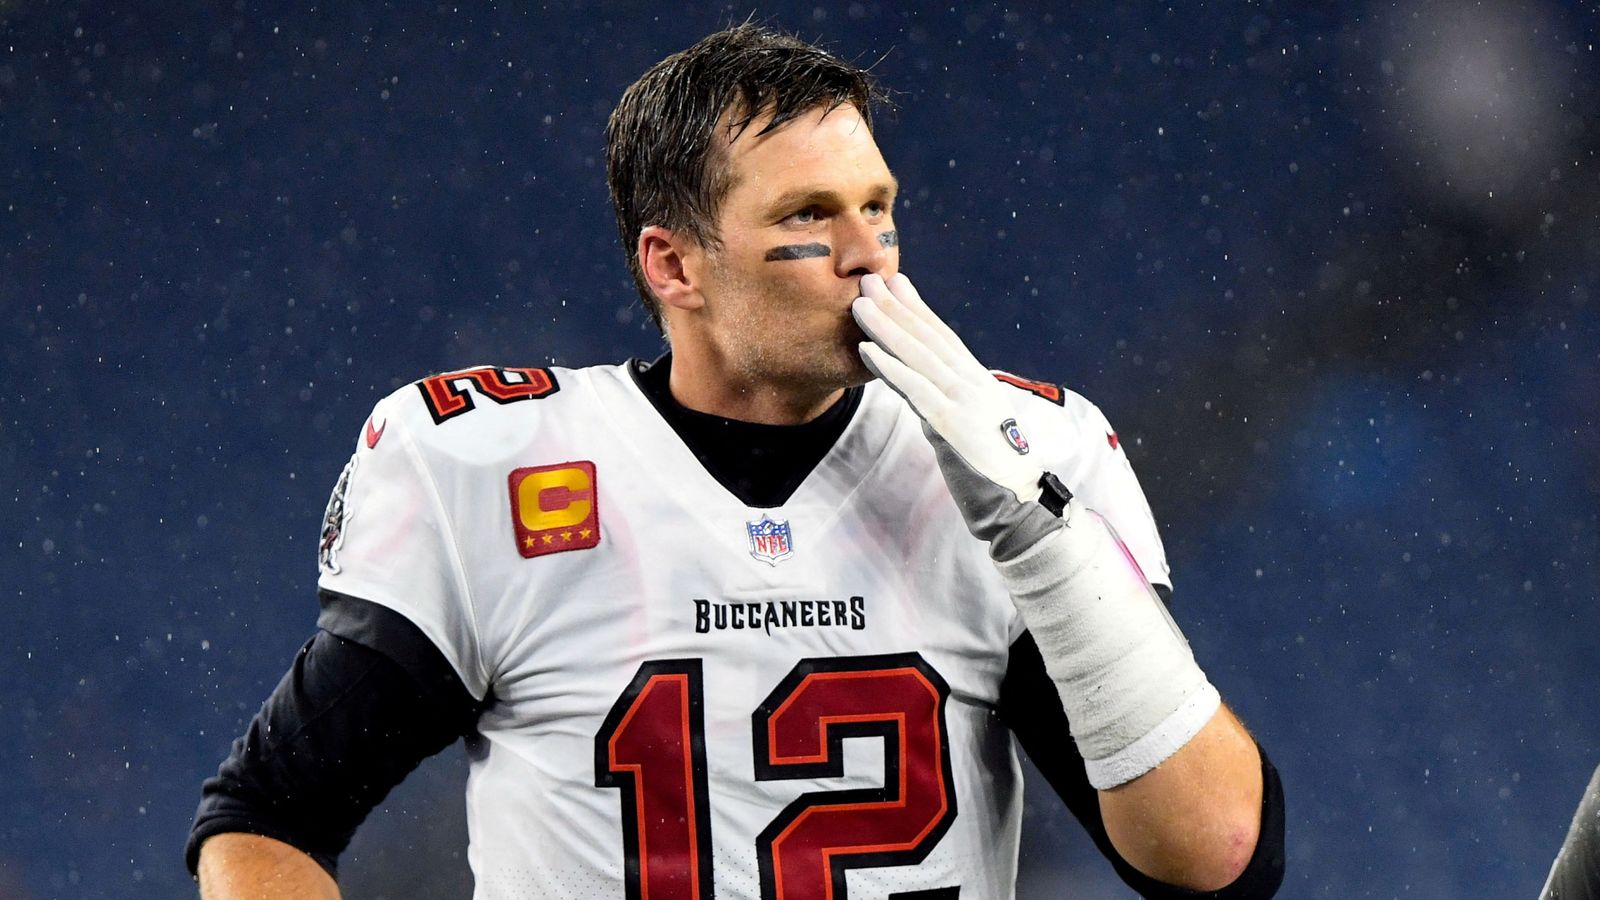 La légende de la NFL, Tom Brady, revient sur sa retraite et confirme